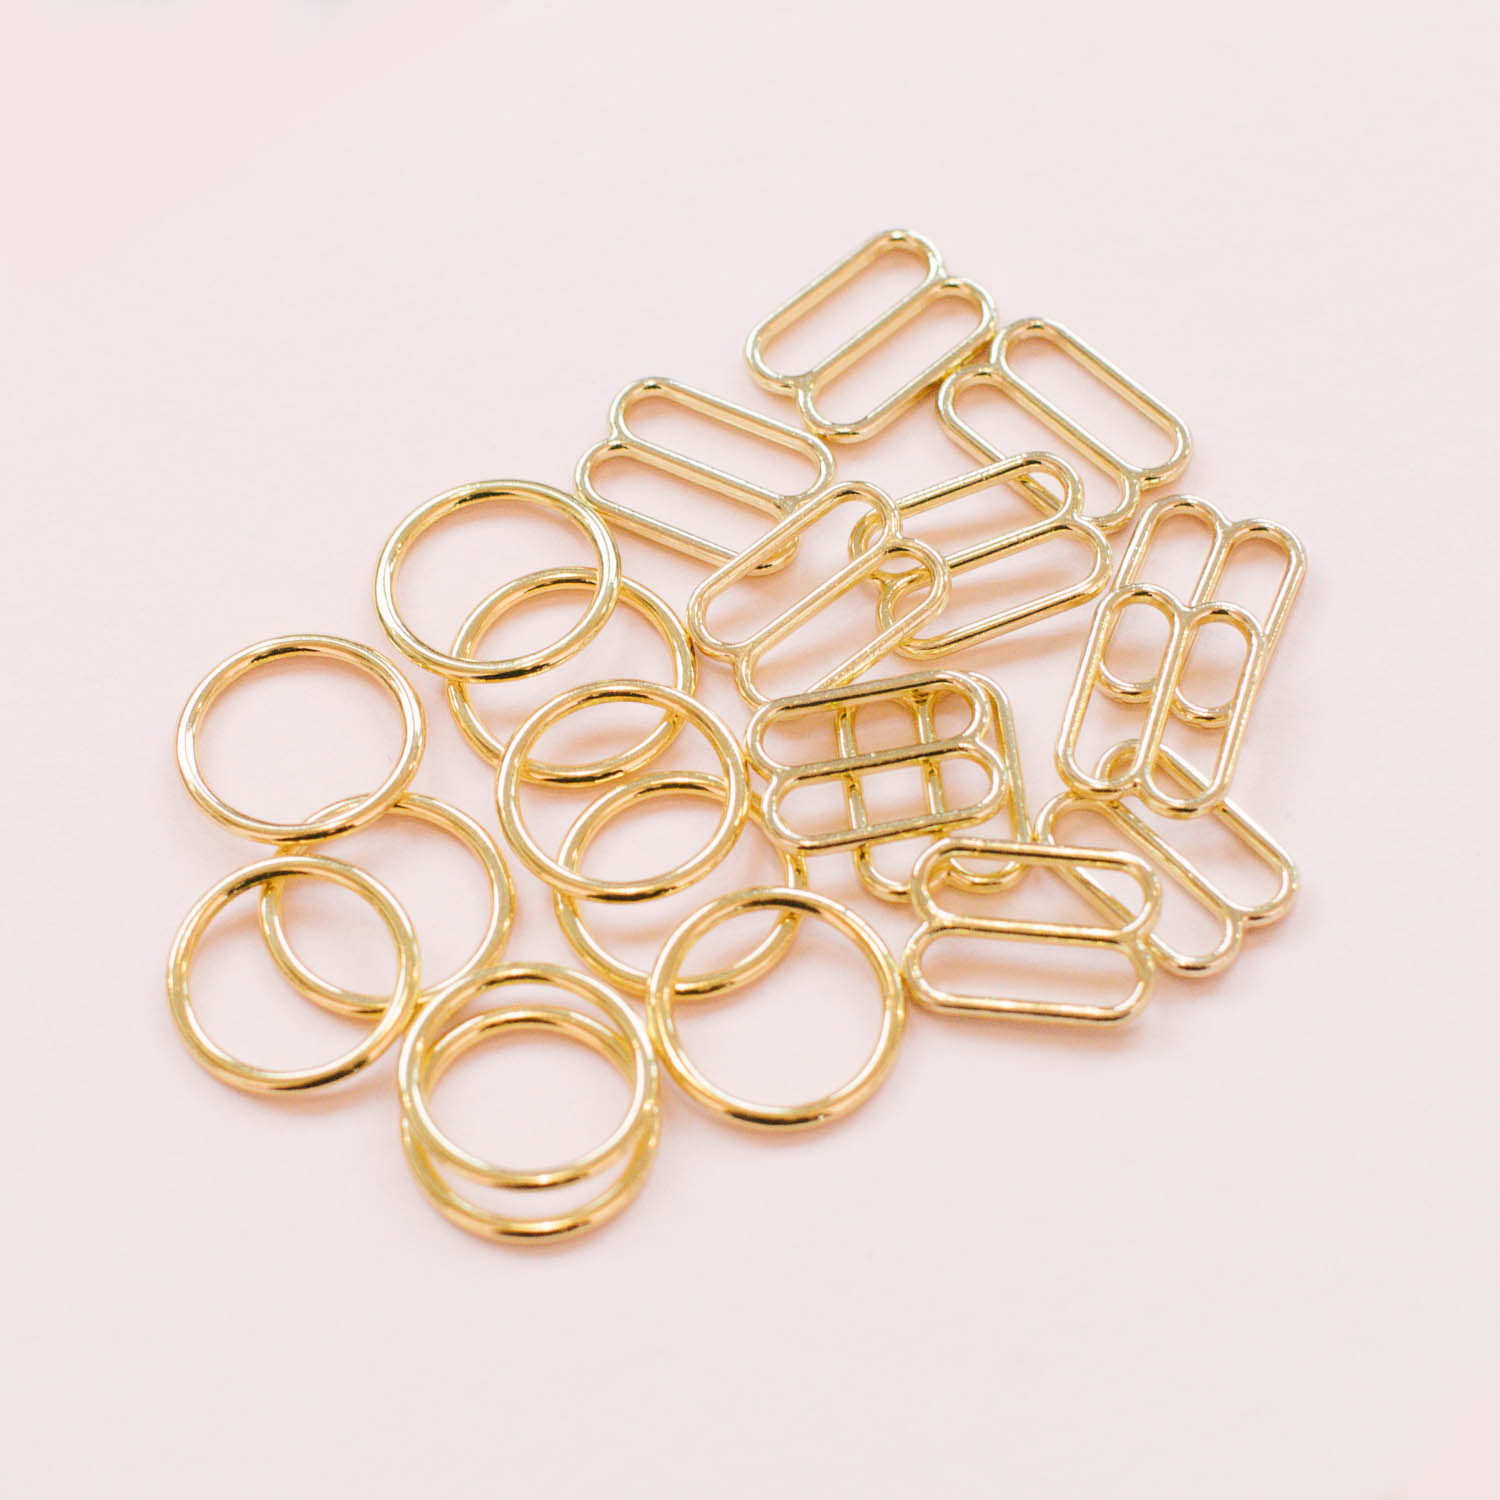 Half Dozen or Dozen Gold Rings + Sliders